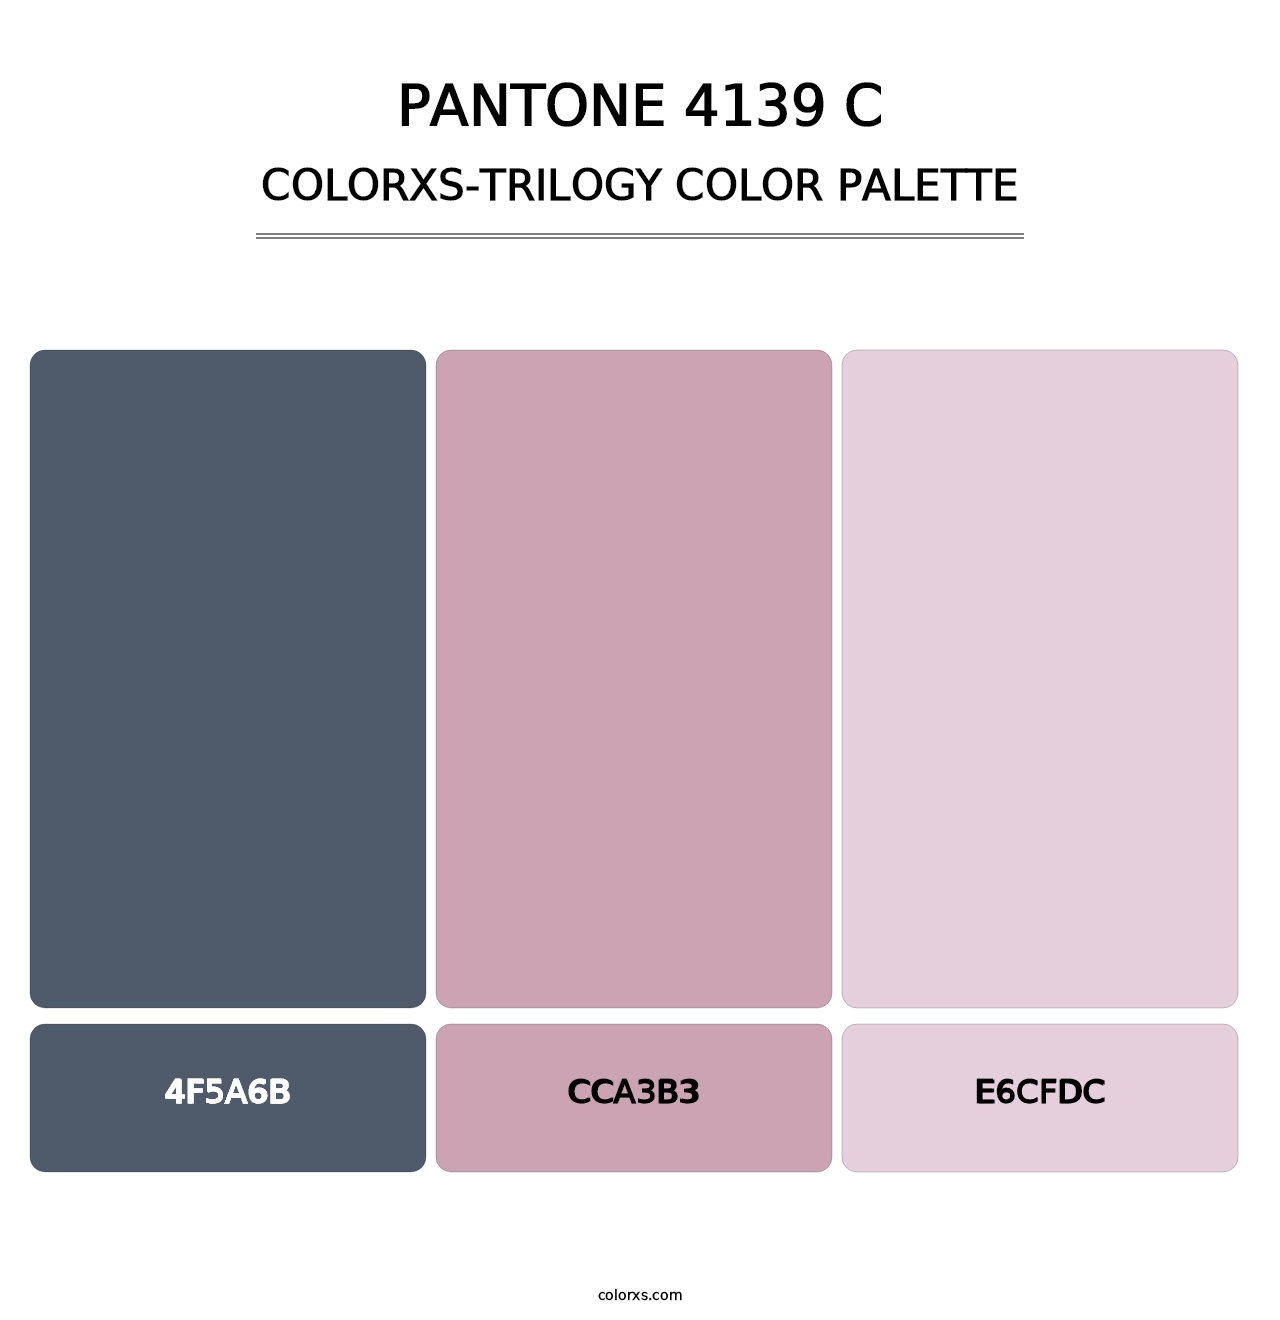 PANTONE 4139 C - Colorxs Trilogy Palette